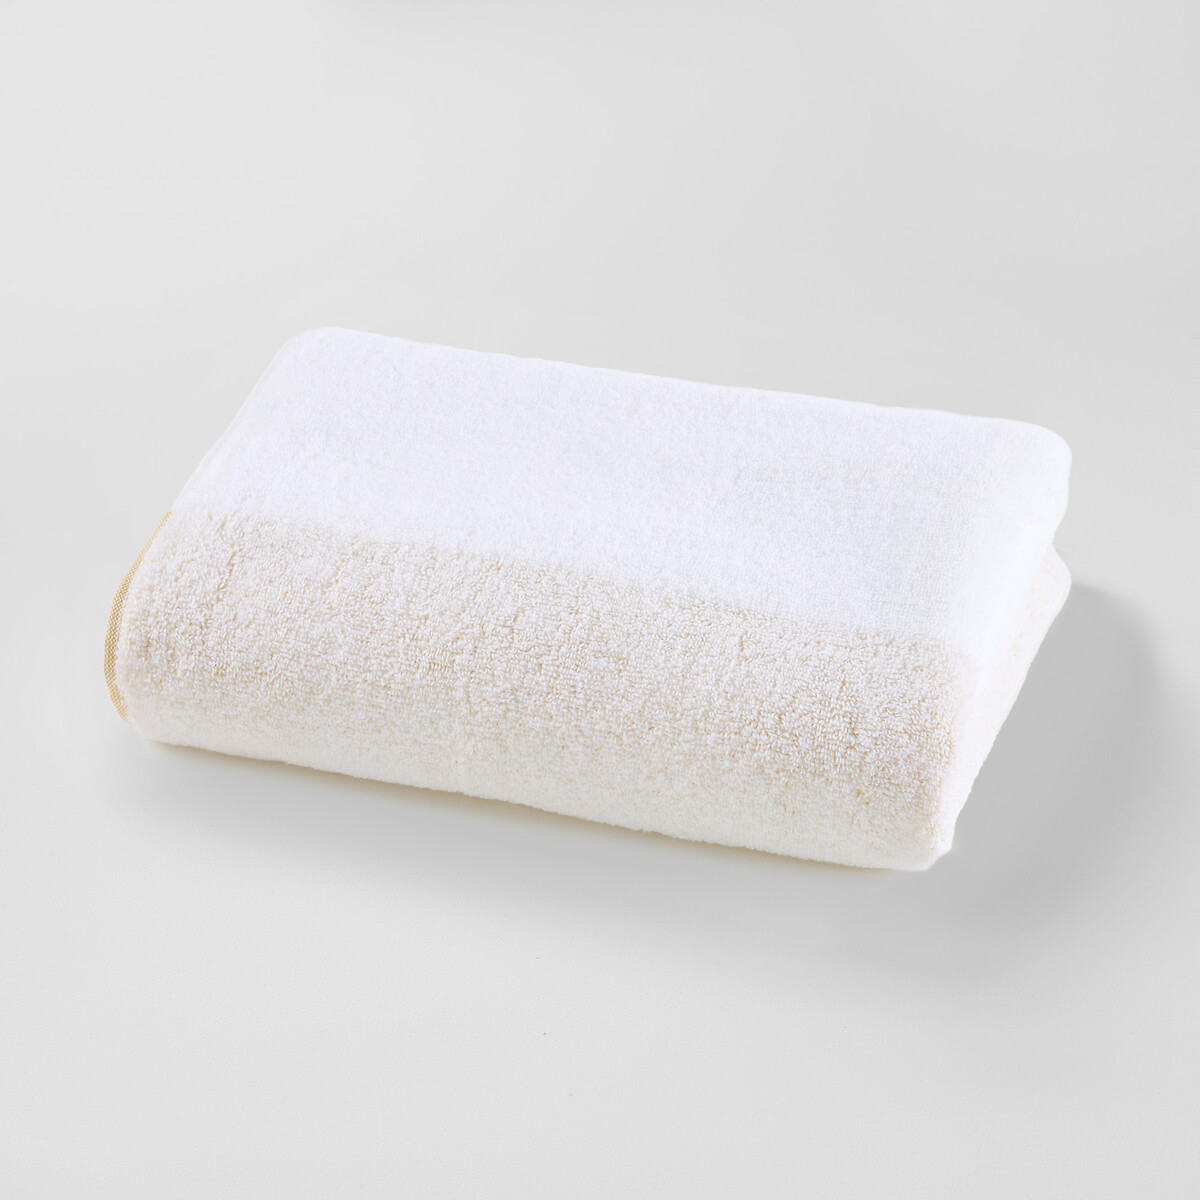 Полотенце банное большое с нулевым кручением 420 гм Pastela 100 x 150 см белый полотенце laredoute полотенце банное 600 гм качество best 100 x 150 см зеленый